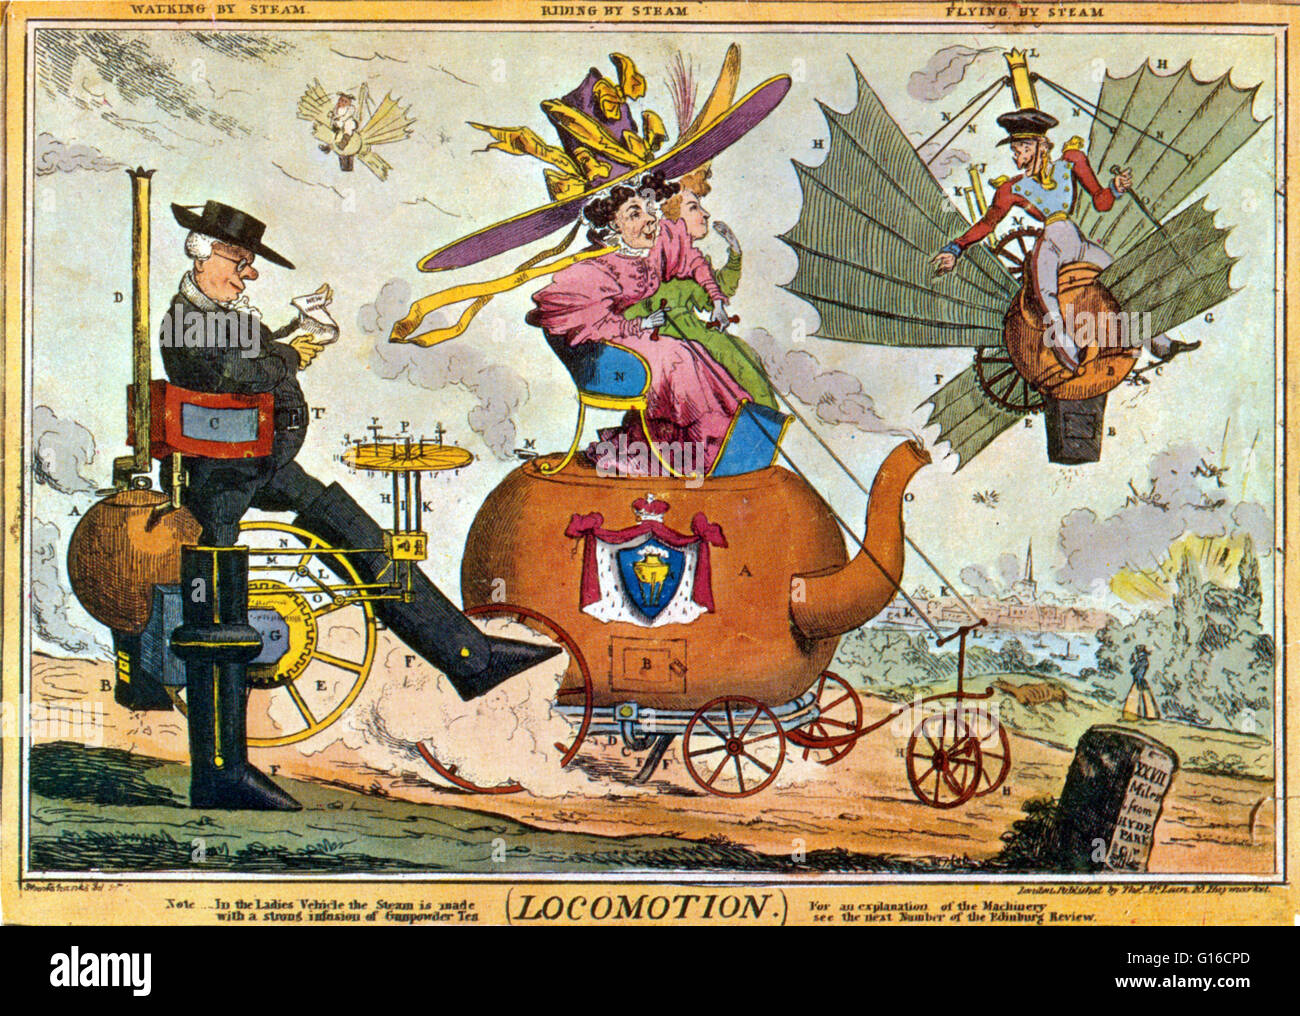 Locomotion - zu Fuß durch Dampf, Reiten durch Dampf, fliegen durch Dampf, von Robert Seymour, 1830. Satire auf die Ankunft von Age of Steam; die Erfindungen im Zuge der neumodischen Dampf Eisenbahn zu erwarten sind, von links nach rechts: eine Dampf-Walker, ein Dampf Stockfoto